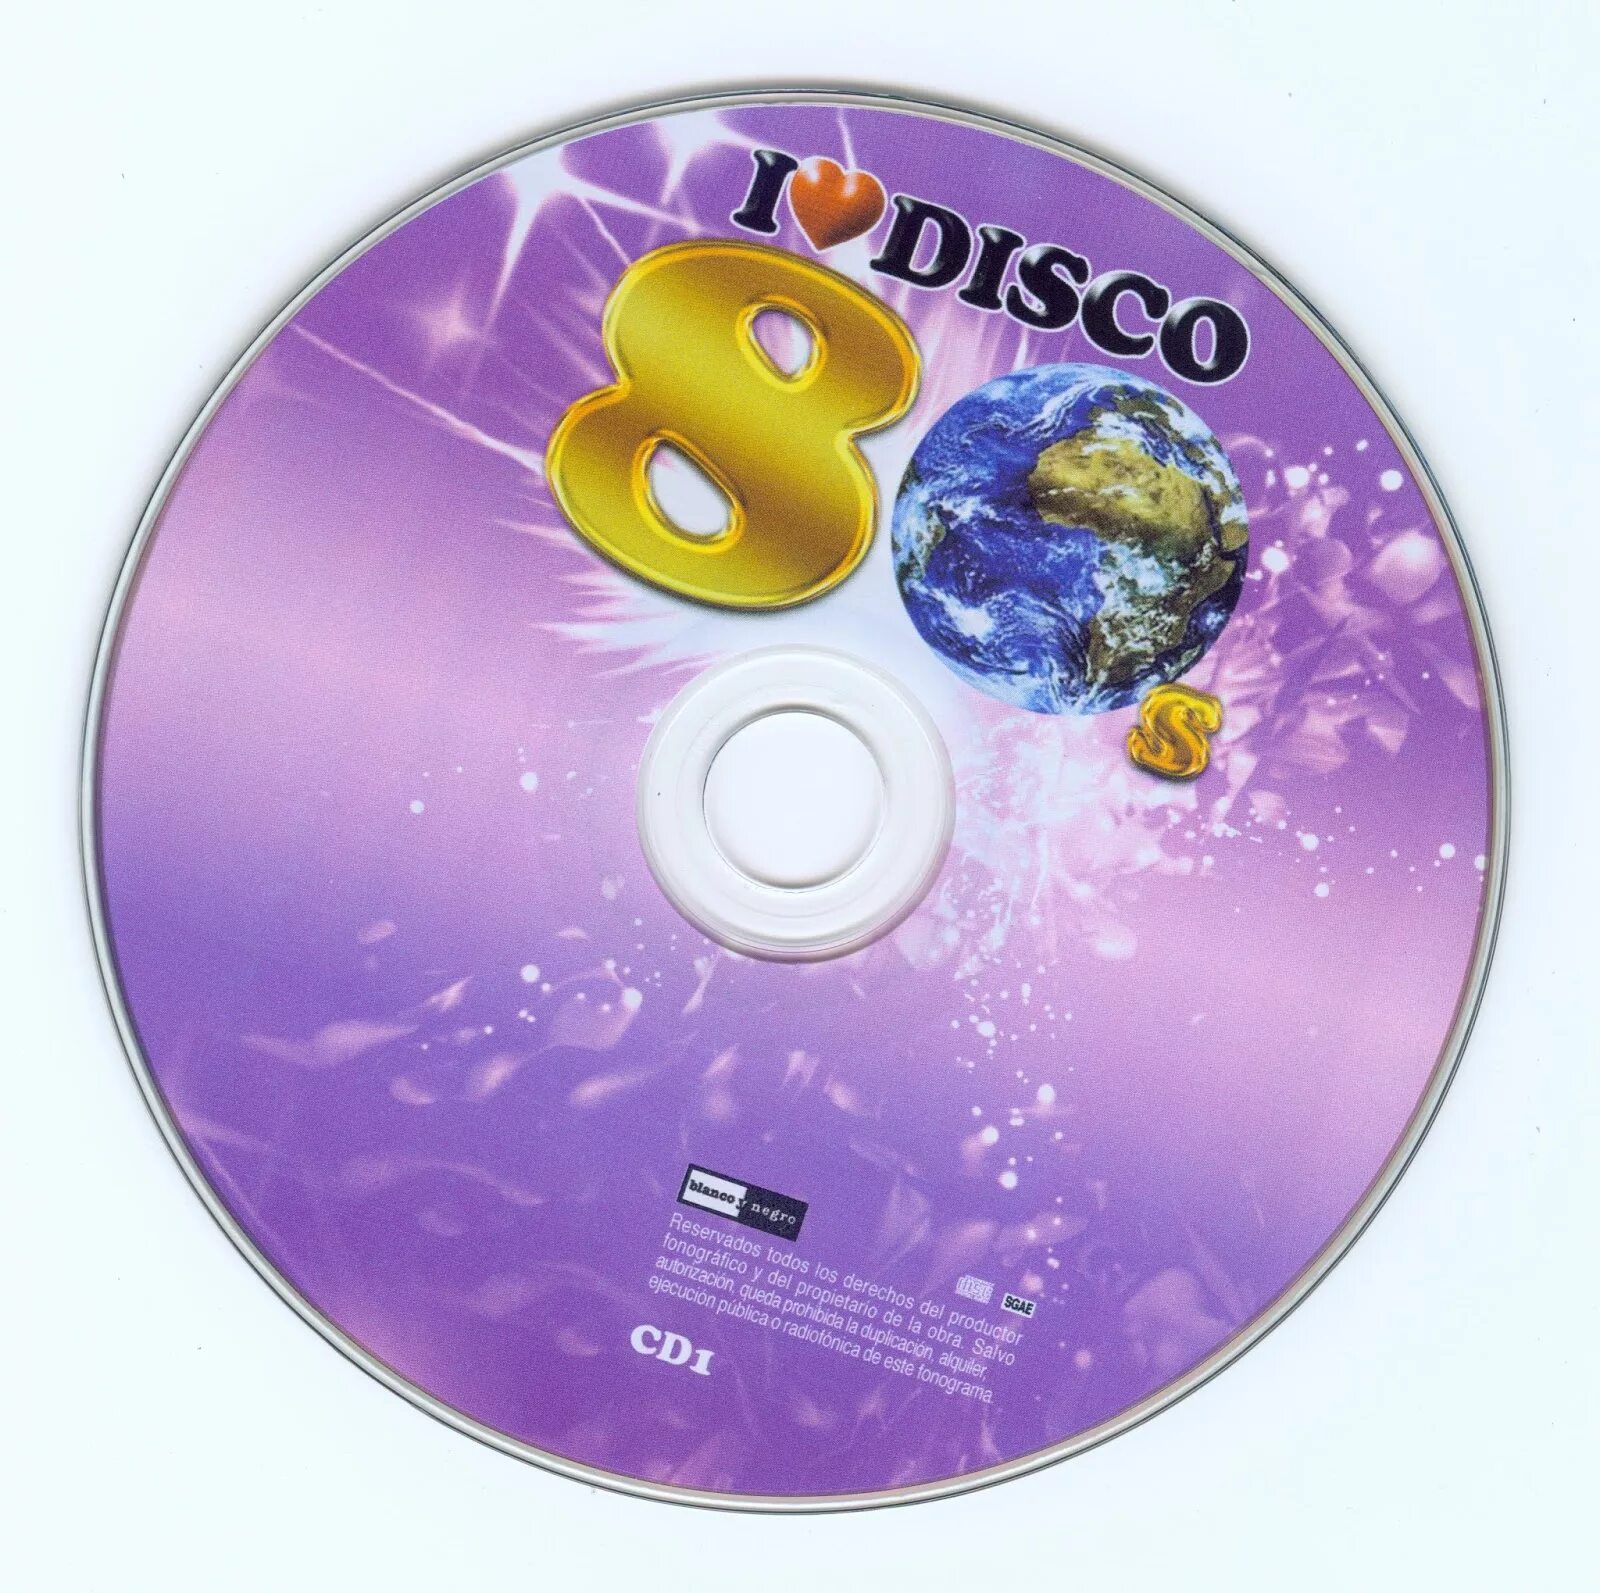 Диск Crazy Disco 80s. Обложки для дисков диско 80. Оформление CD. Disco 80 s CD. Disco 80 s